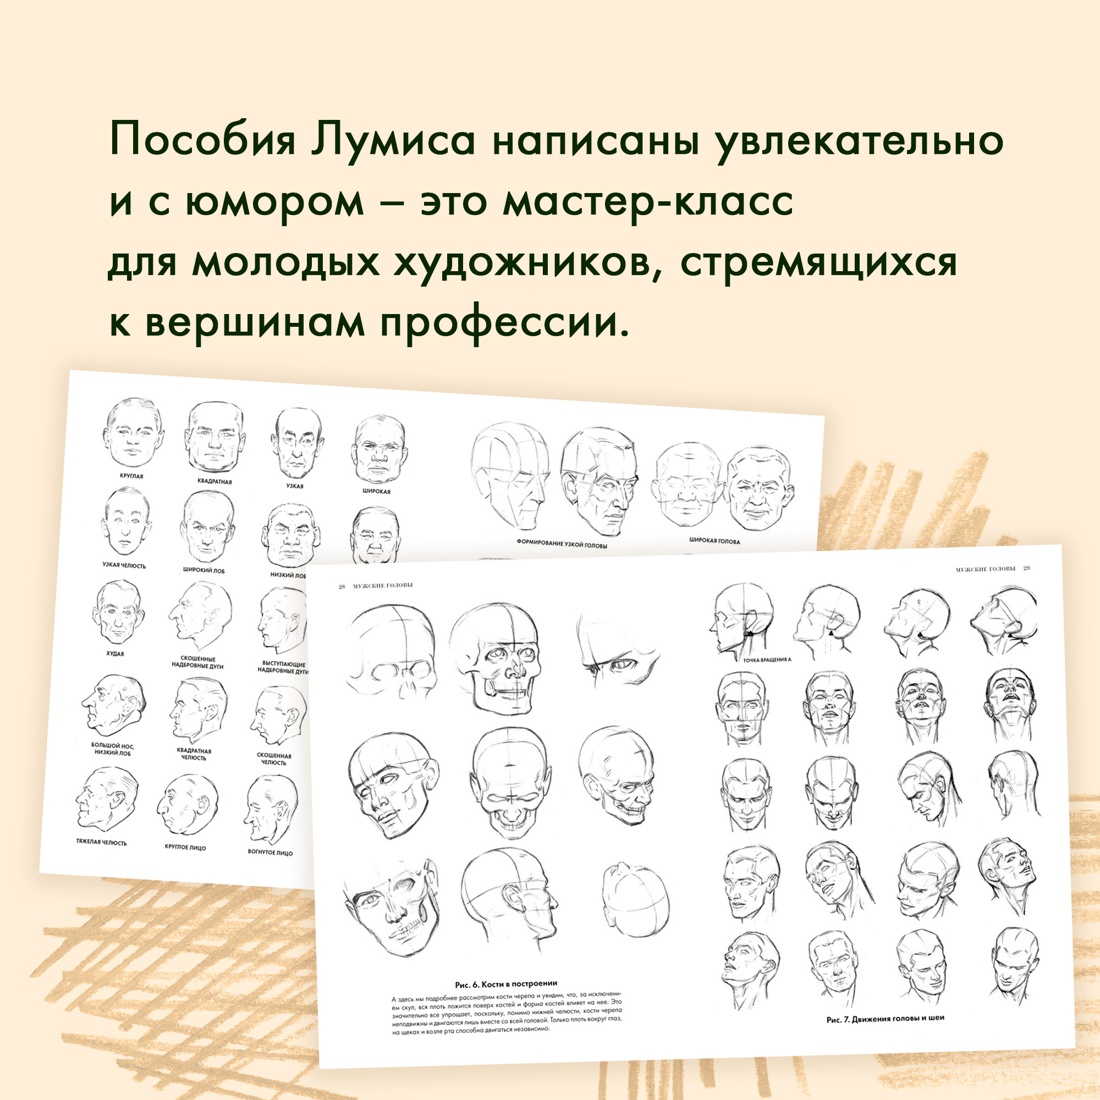 Промо материал к книге "Рисование головы и рук" №4